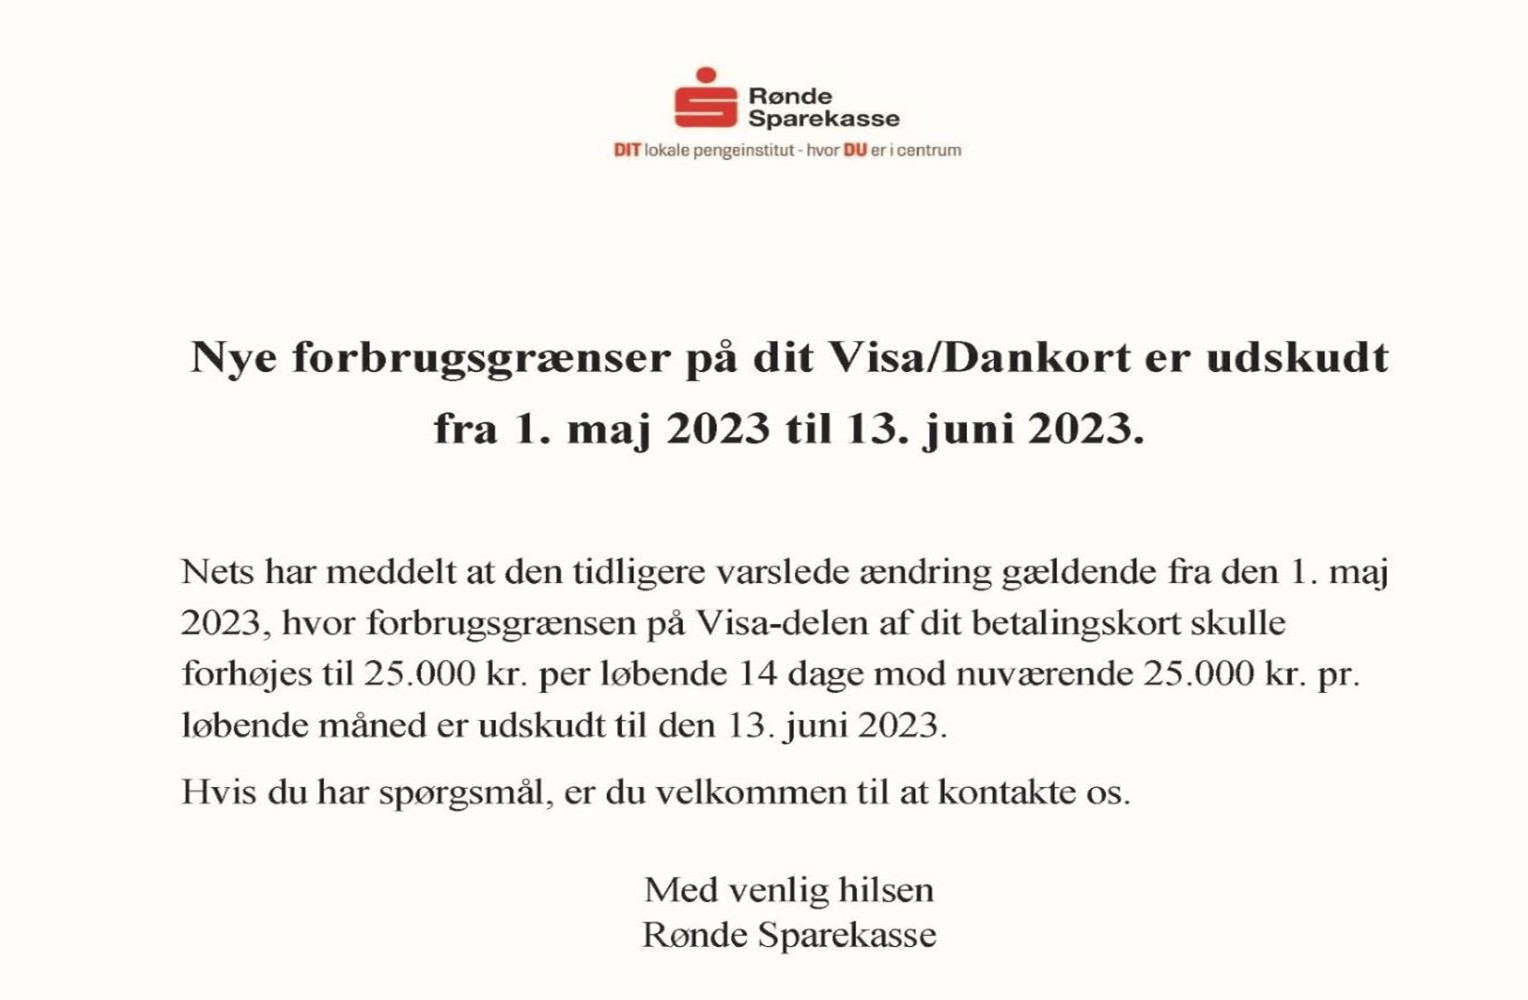 Nye forbrugsgrænser Visa Dankort udskudt til 13. juni 2023 (2)